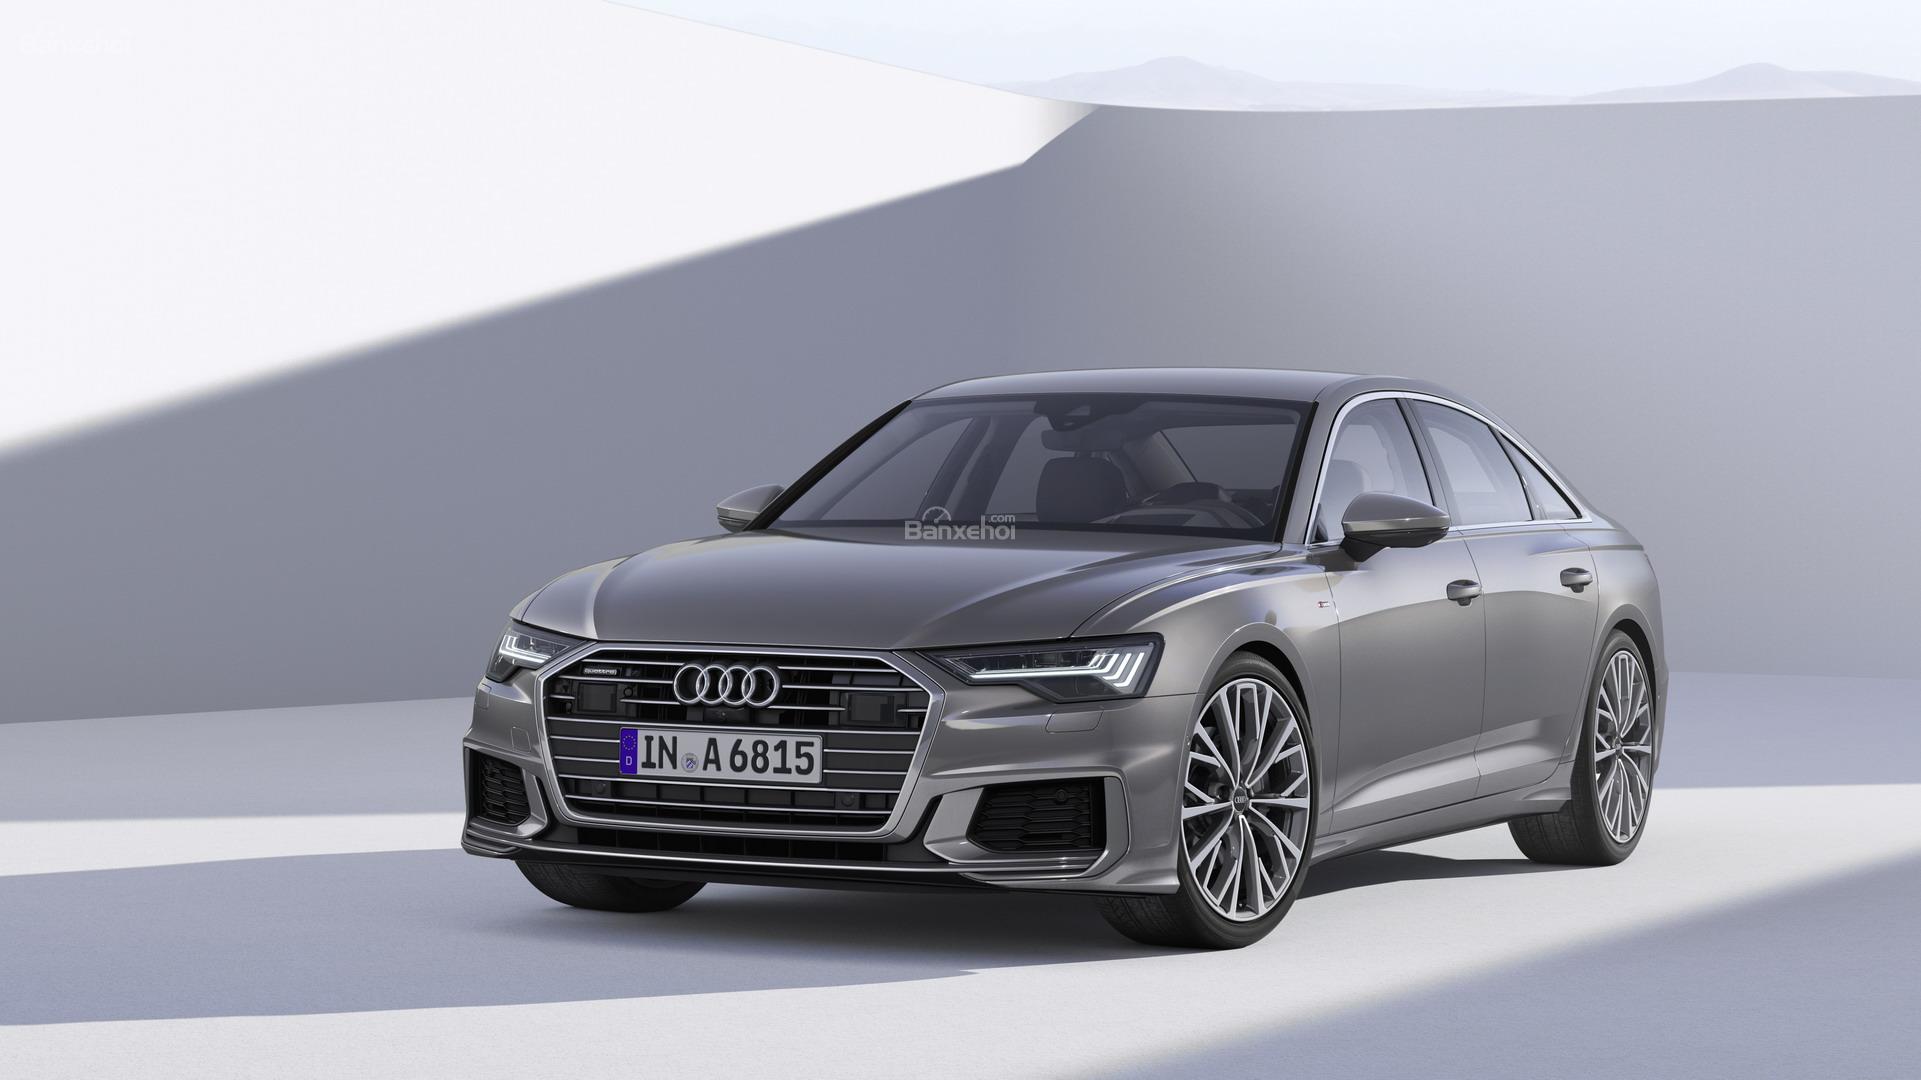 Audi A6 2019 chính thức lộ diện với vô số tính năng tiên tiến mới 1a